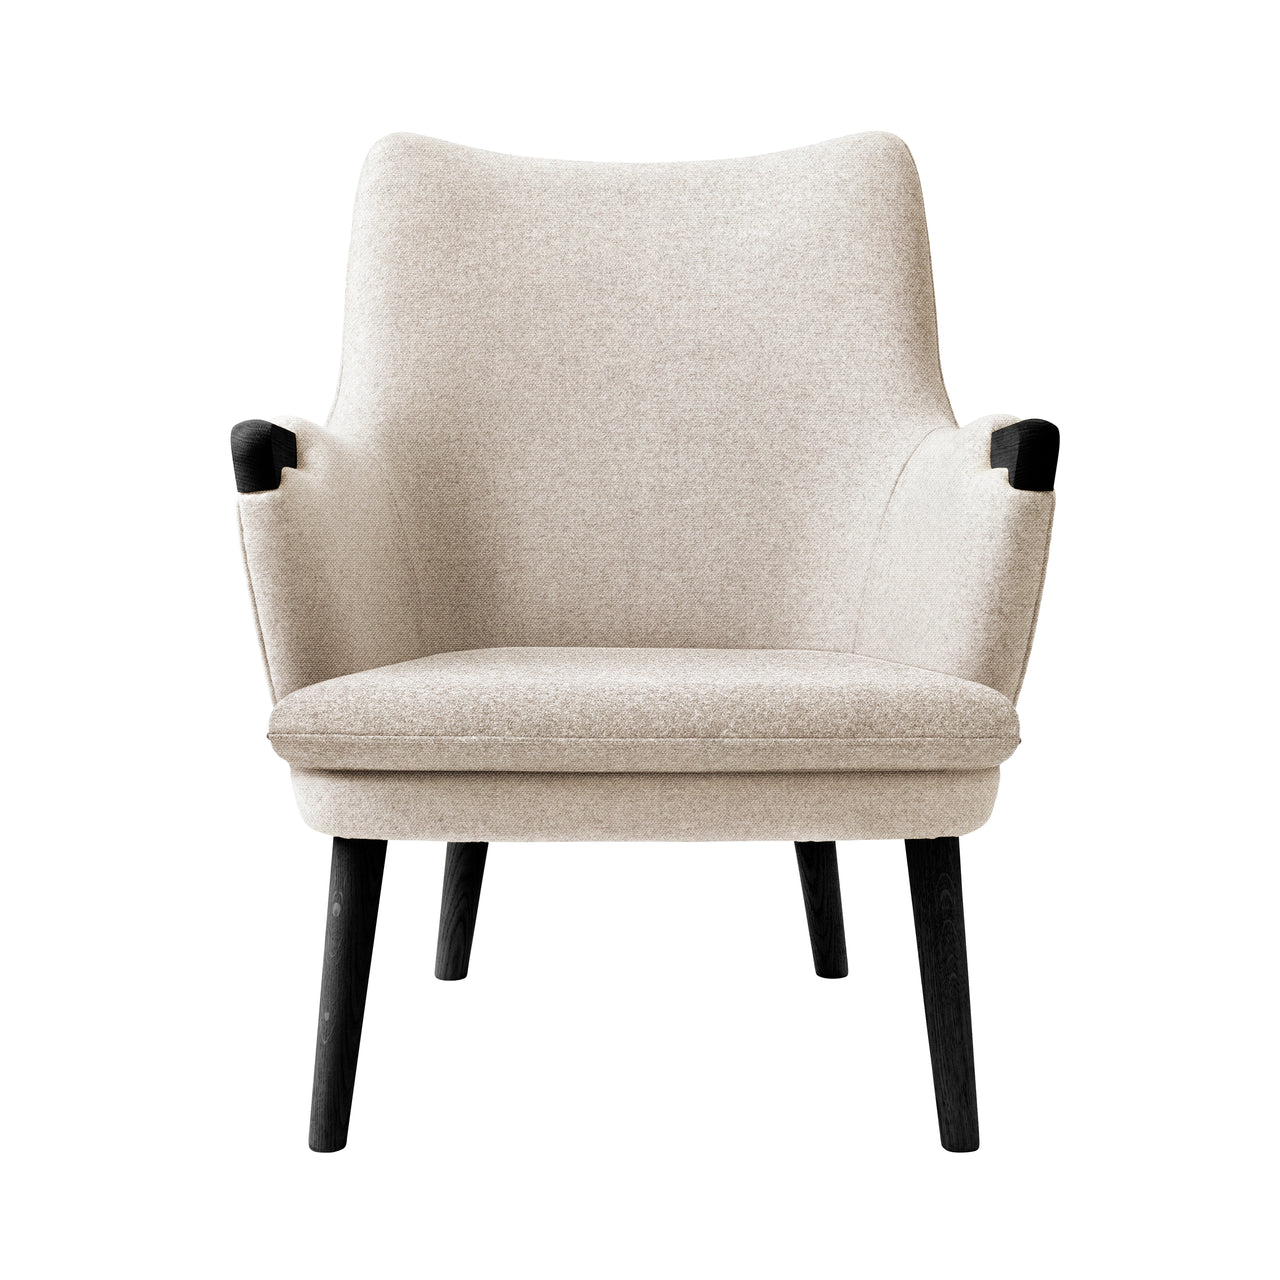 CH71 Lounge Chair: Black Oak